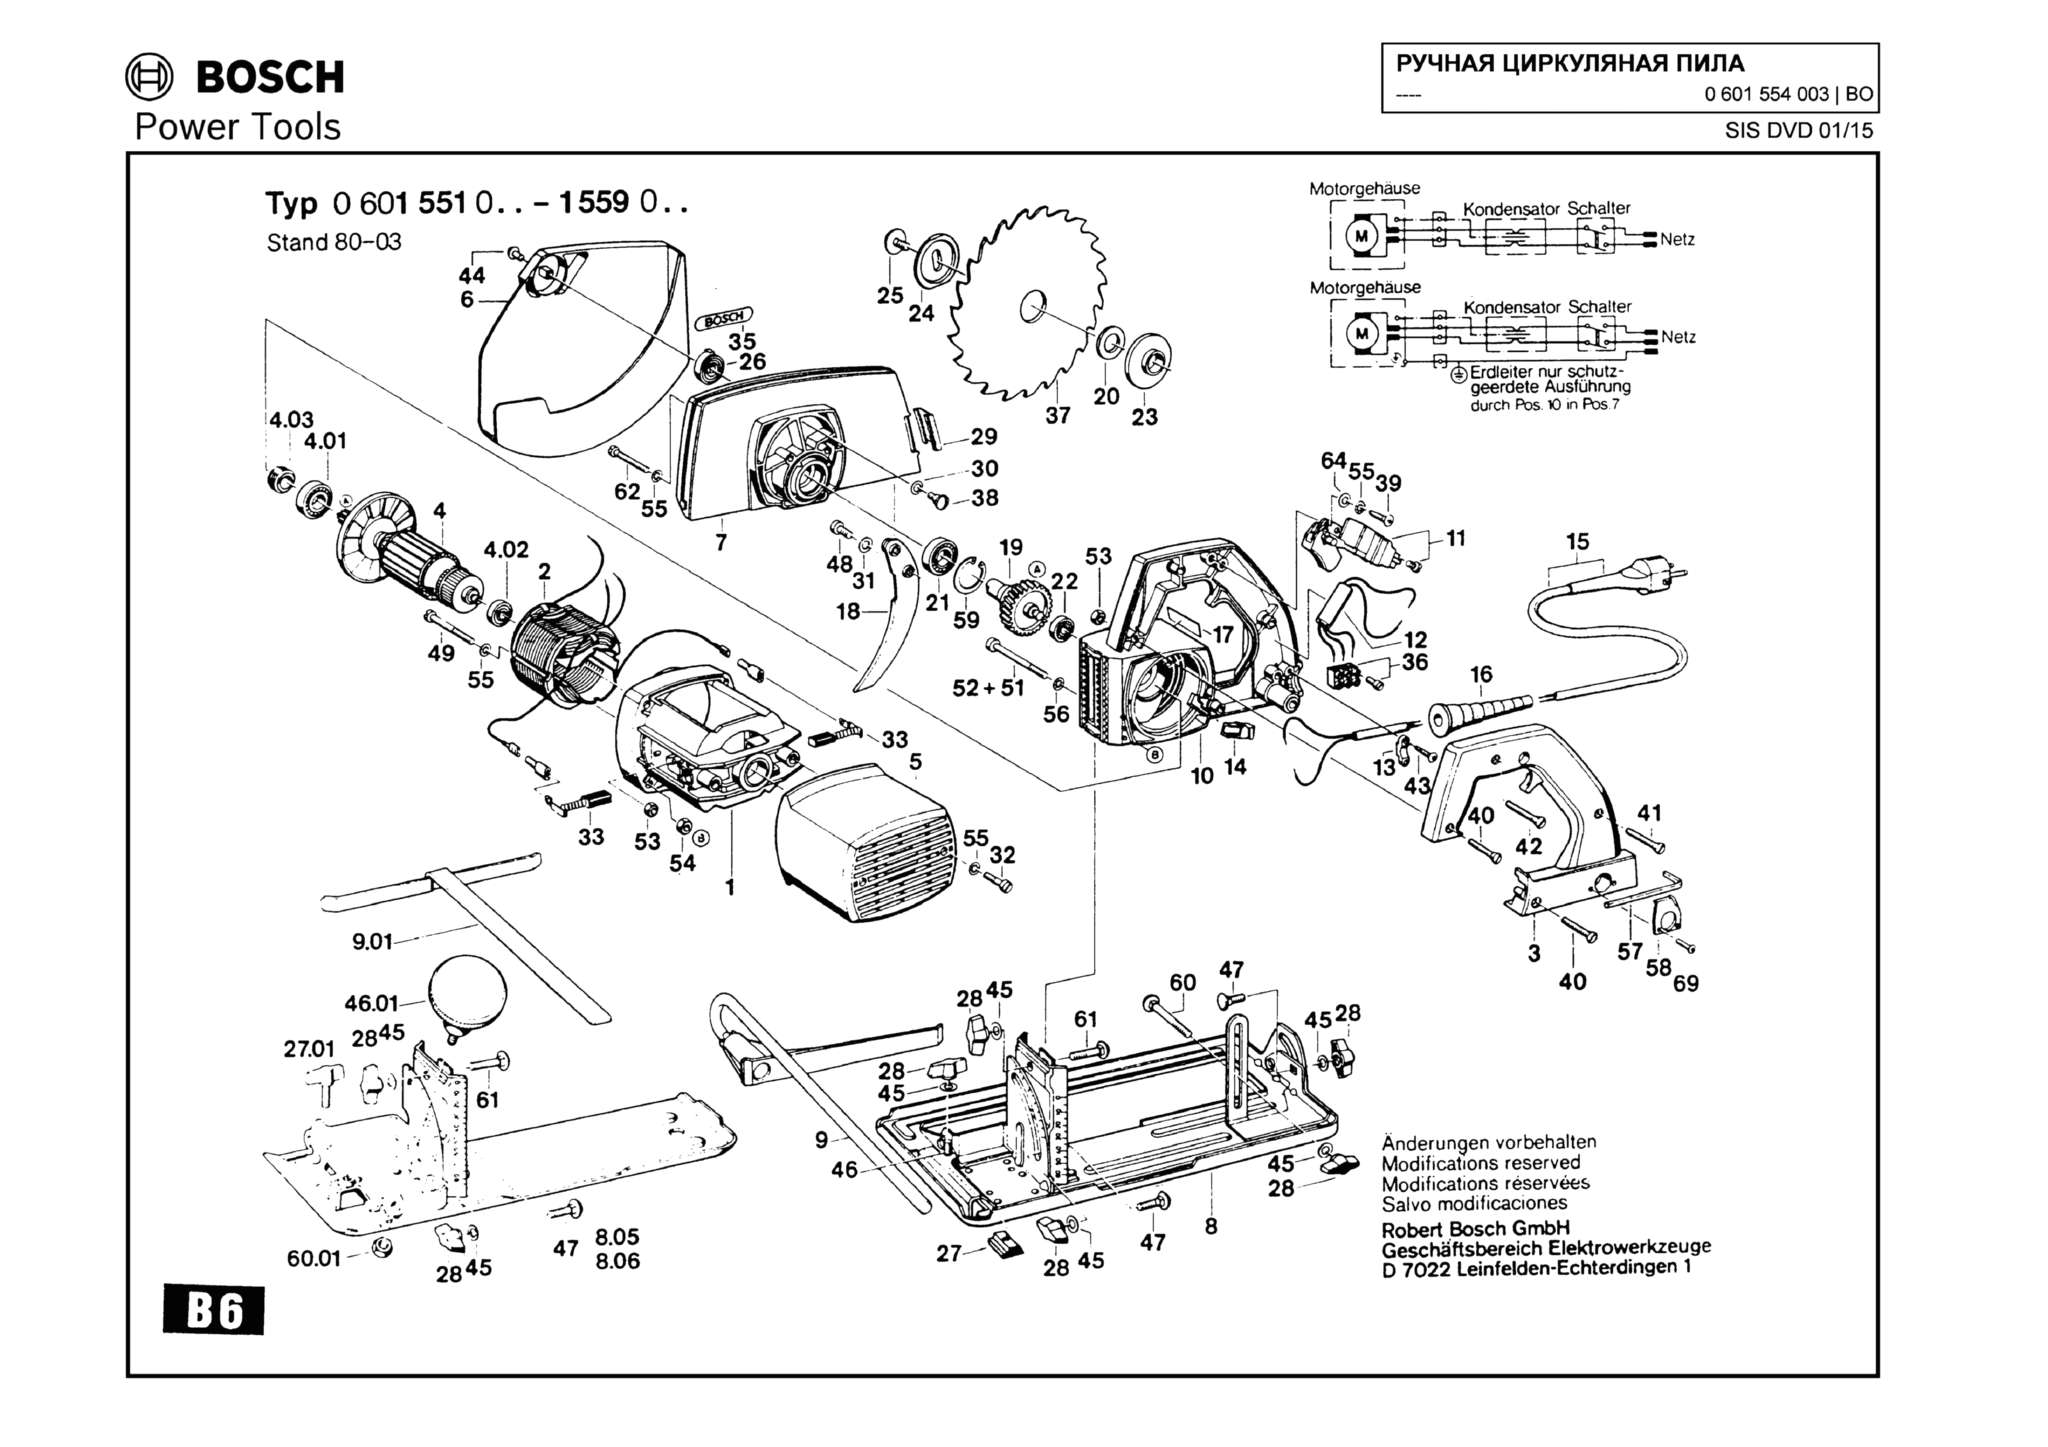 Запчасти, схема и деталировка Bosch (ТИП 0601554003)